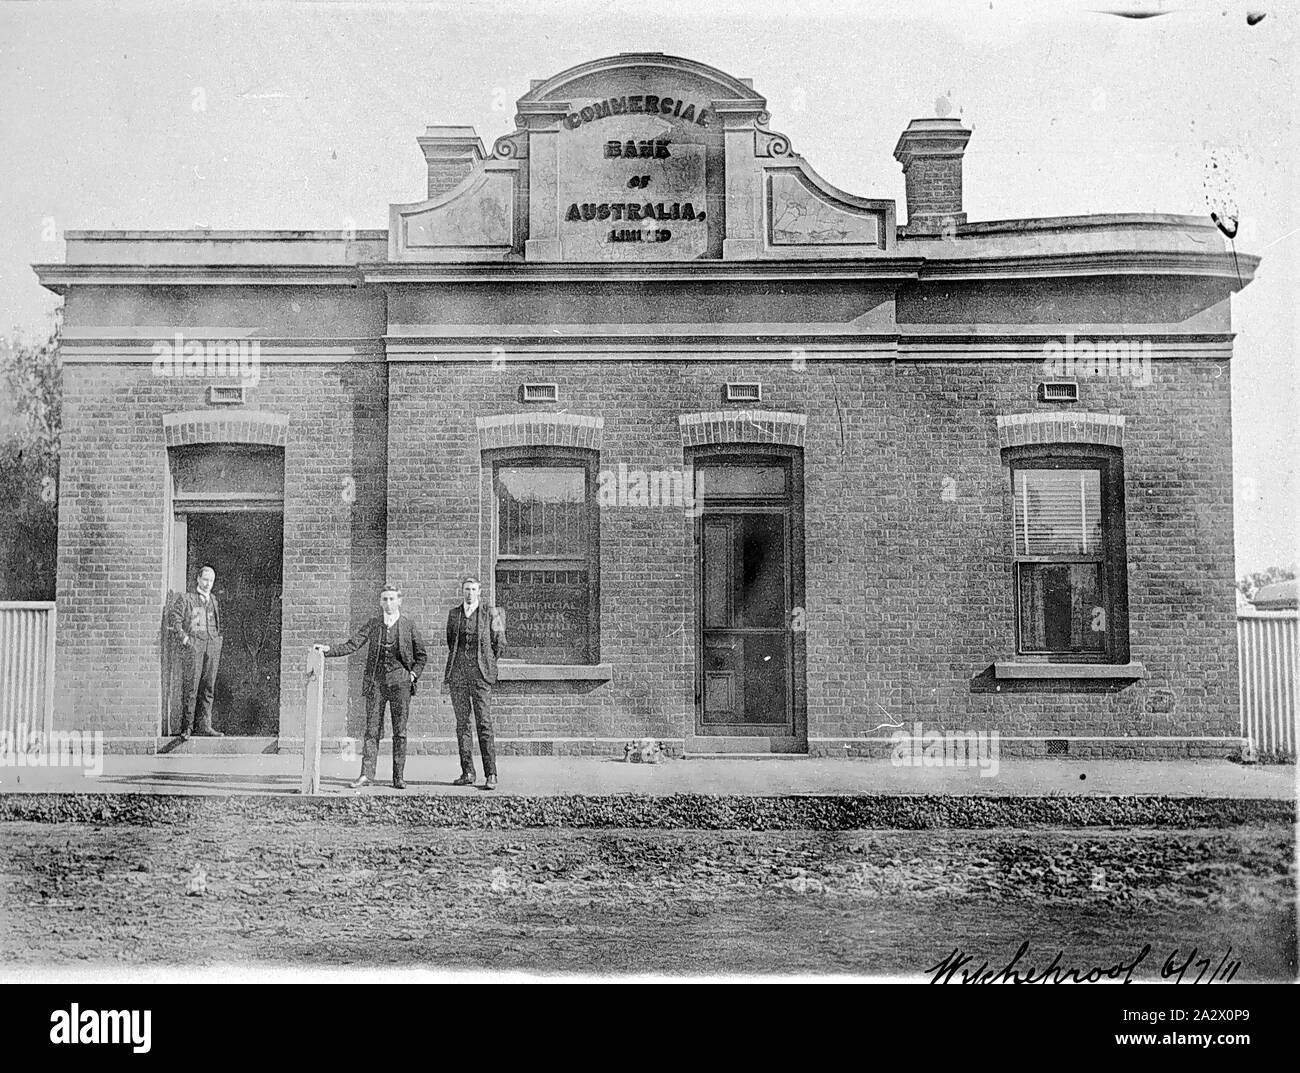 Negativo - Wycheproof, Victoria, Lug 1911, Personale al di fuori della Banca Commerciale di Australia Ltd in Wycheproof Foto Stock